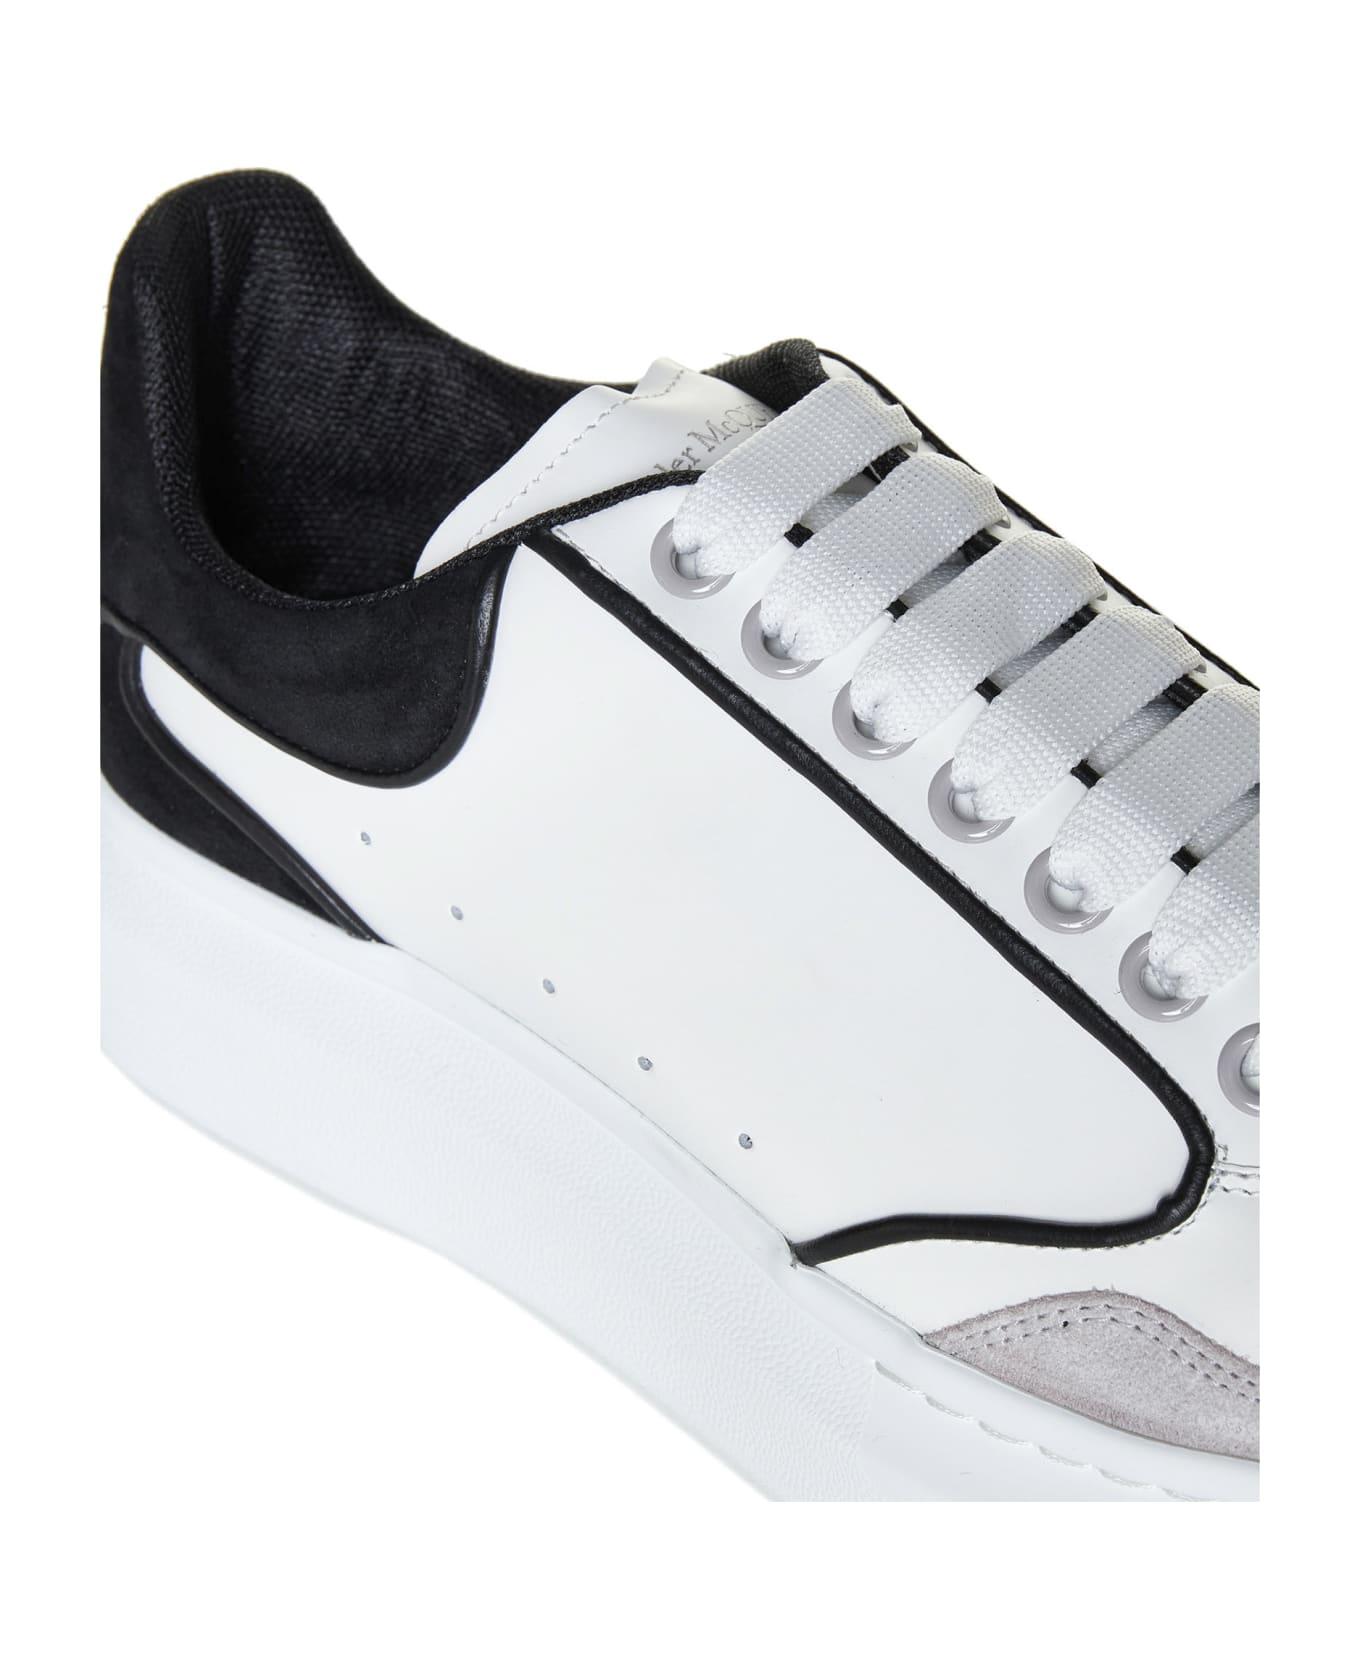 Alexander McQueen Oversize Sneakers - White スニーカー